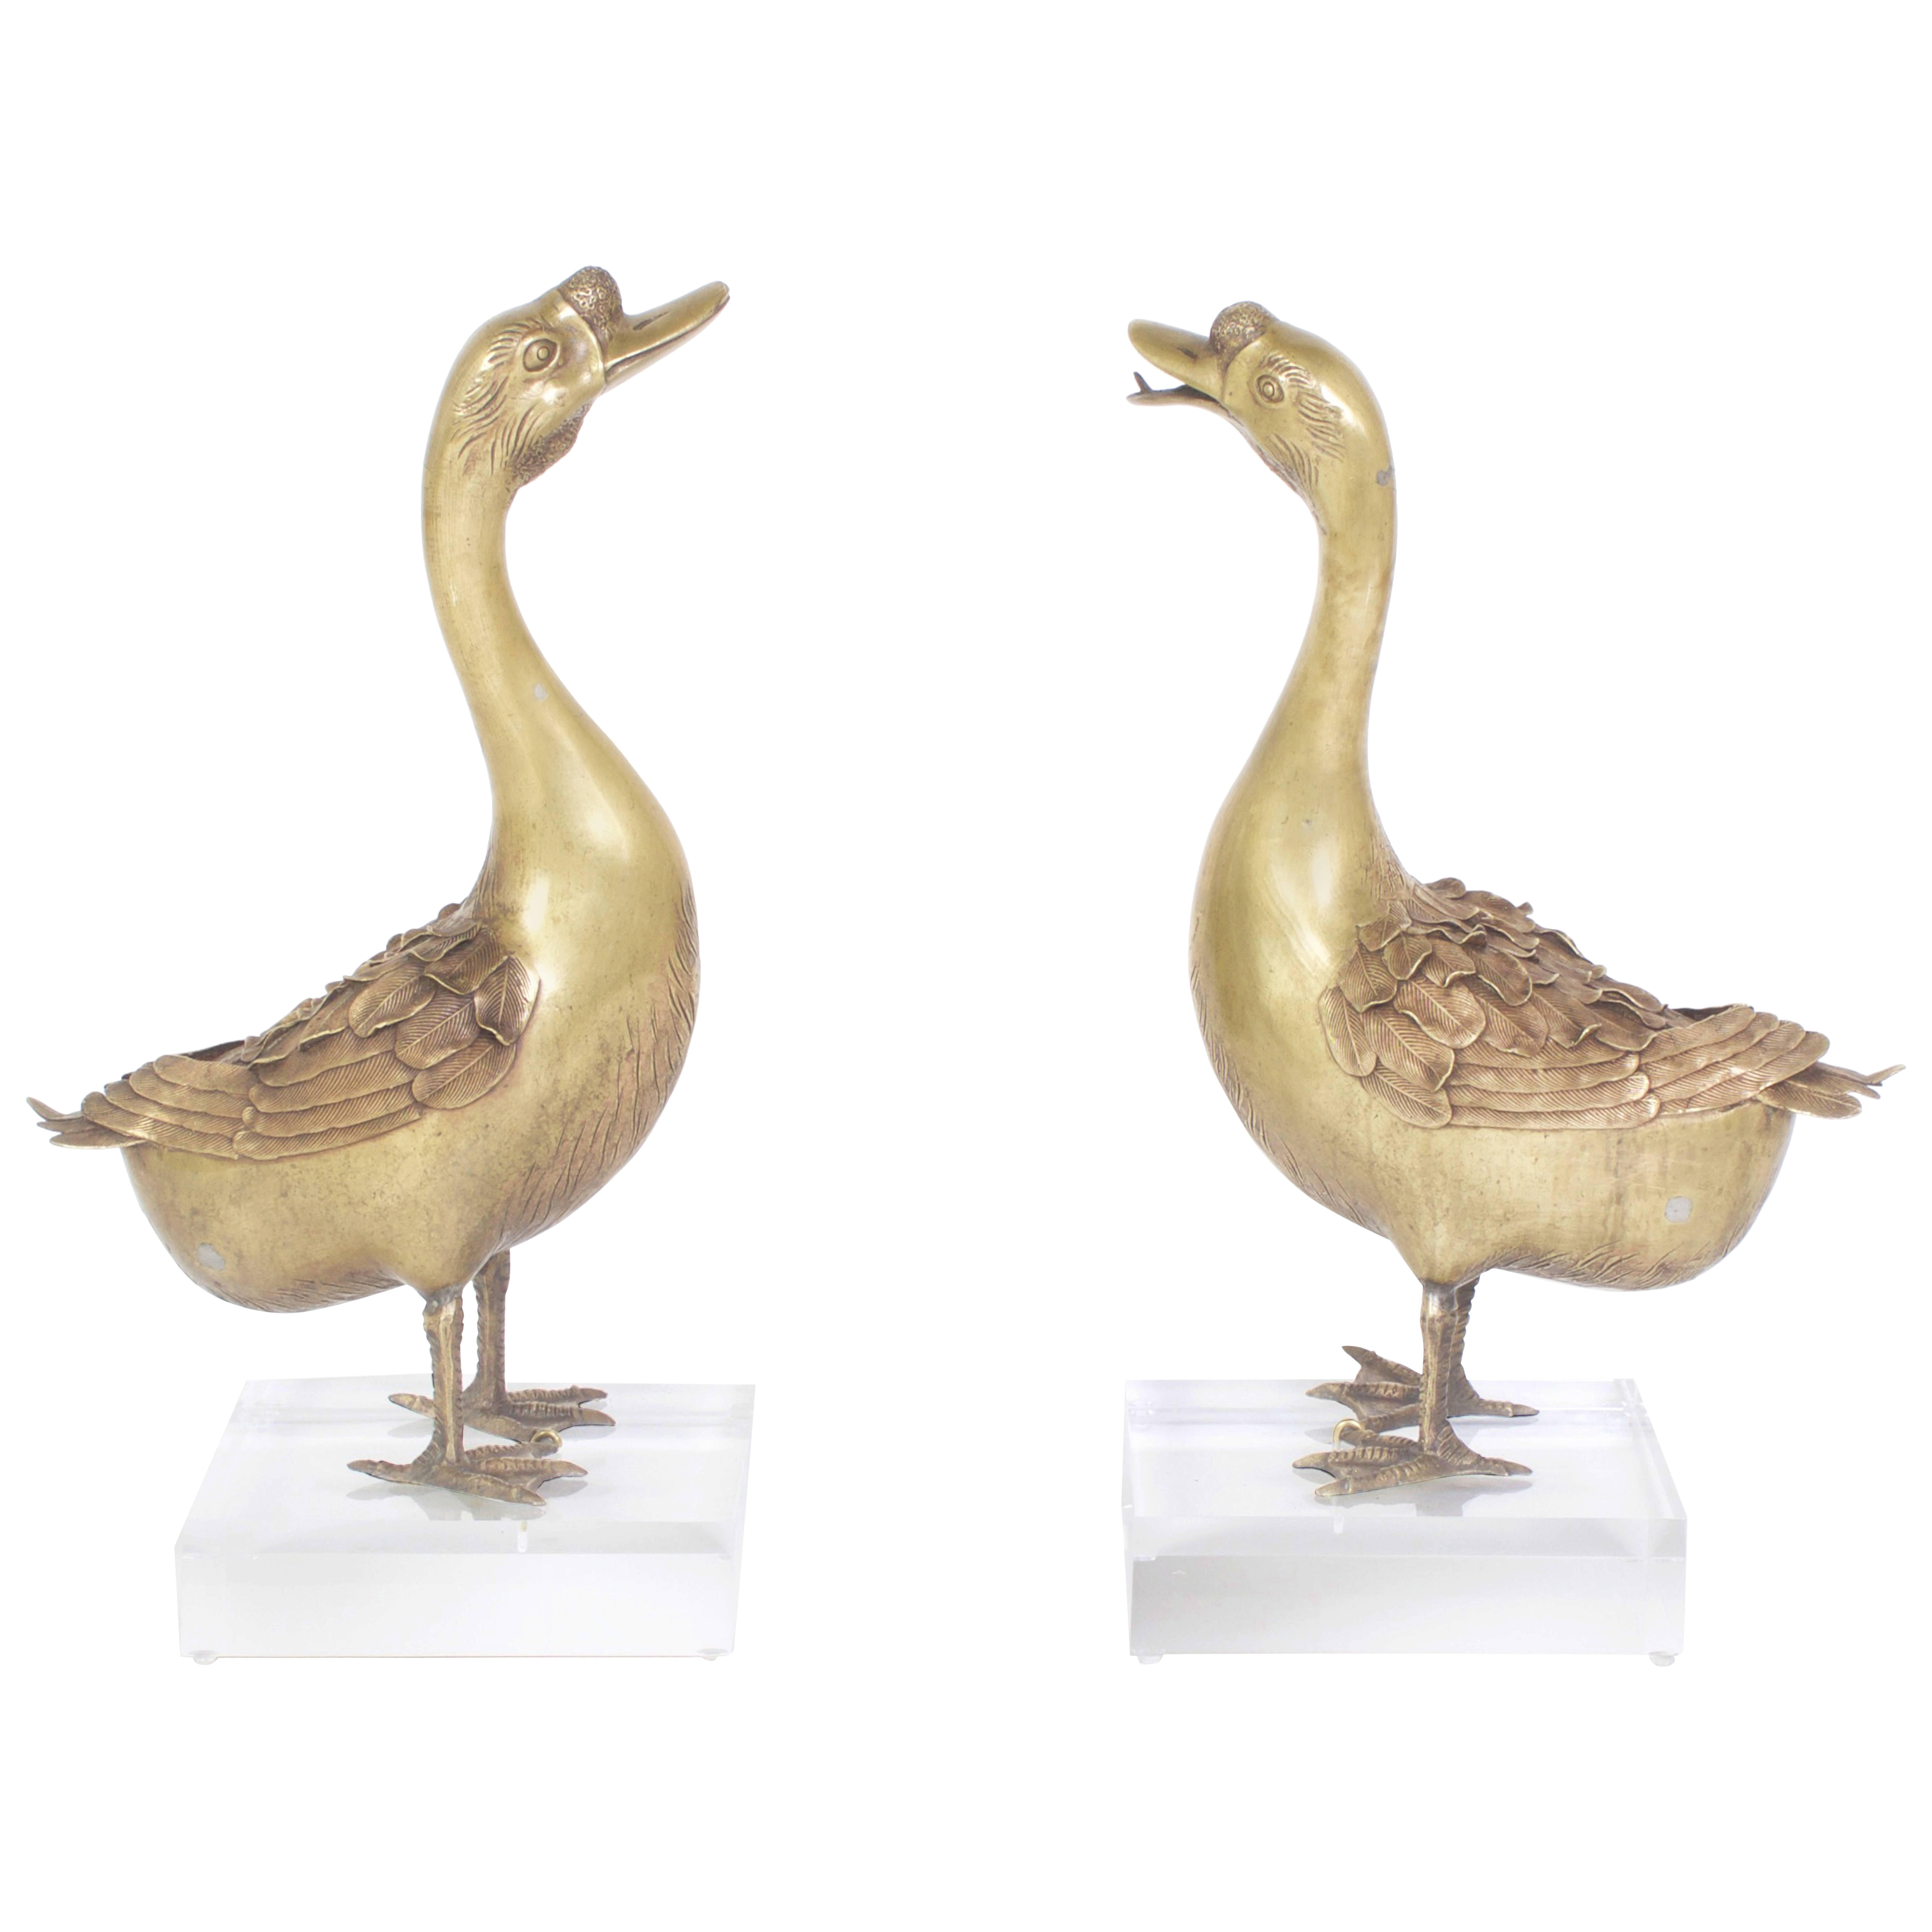 Importante paire d'oiseaux japonais en bronze, en forme d'oies, réalisés de main de maître. L'un avec un bec fermé, l'autre ouvert, tous deux avec des expressions bizarres. Ces figurines anciennes en bronze sont marquées par un rare souci du détail